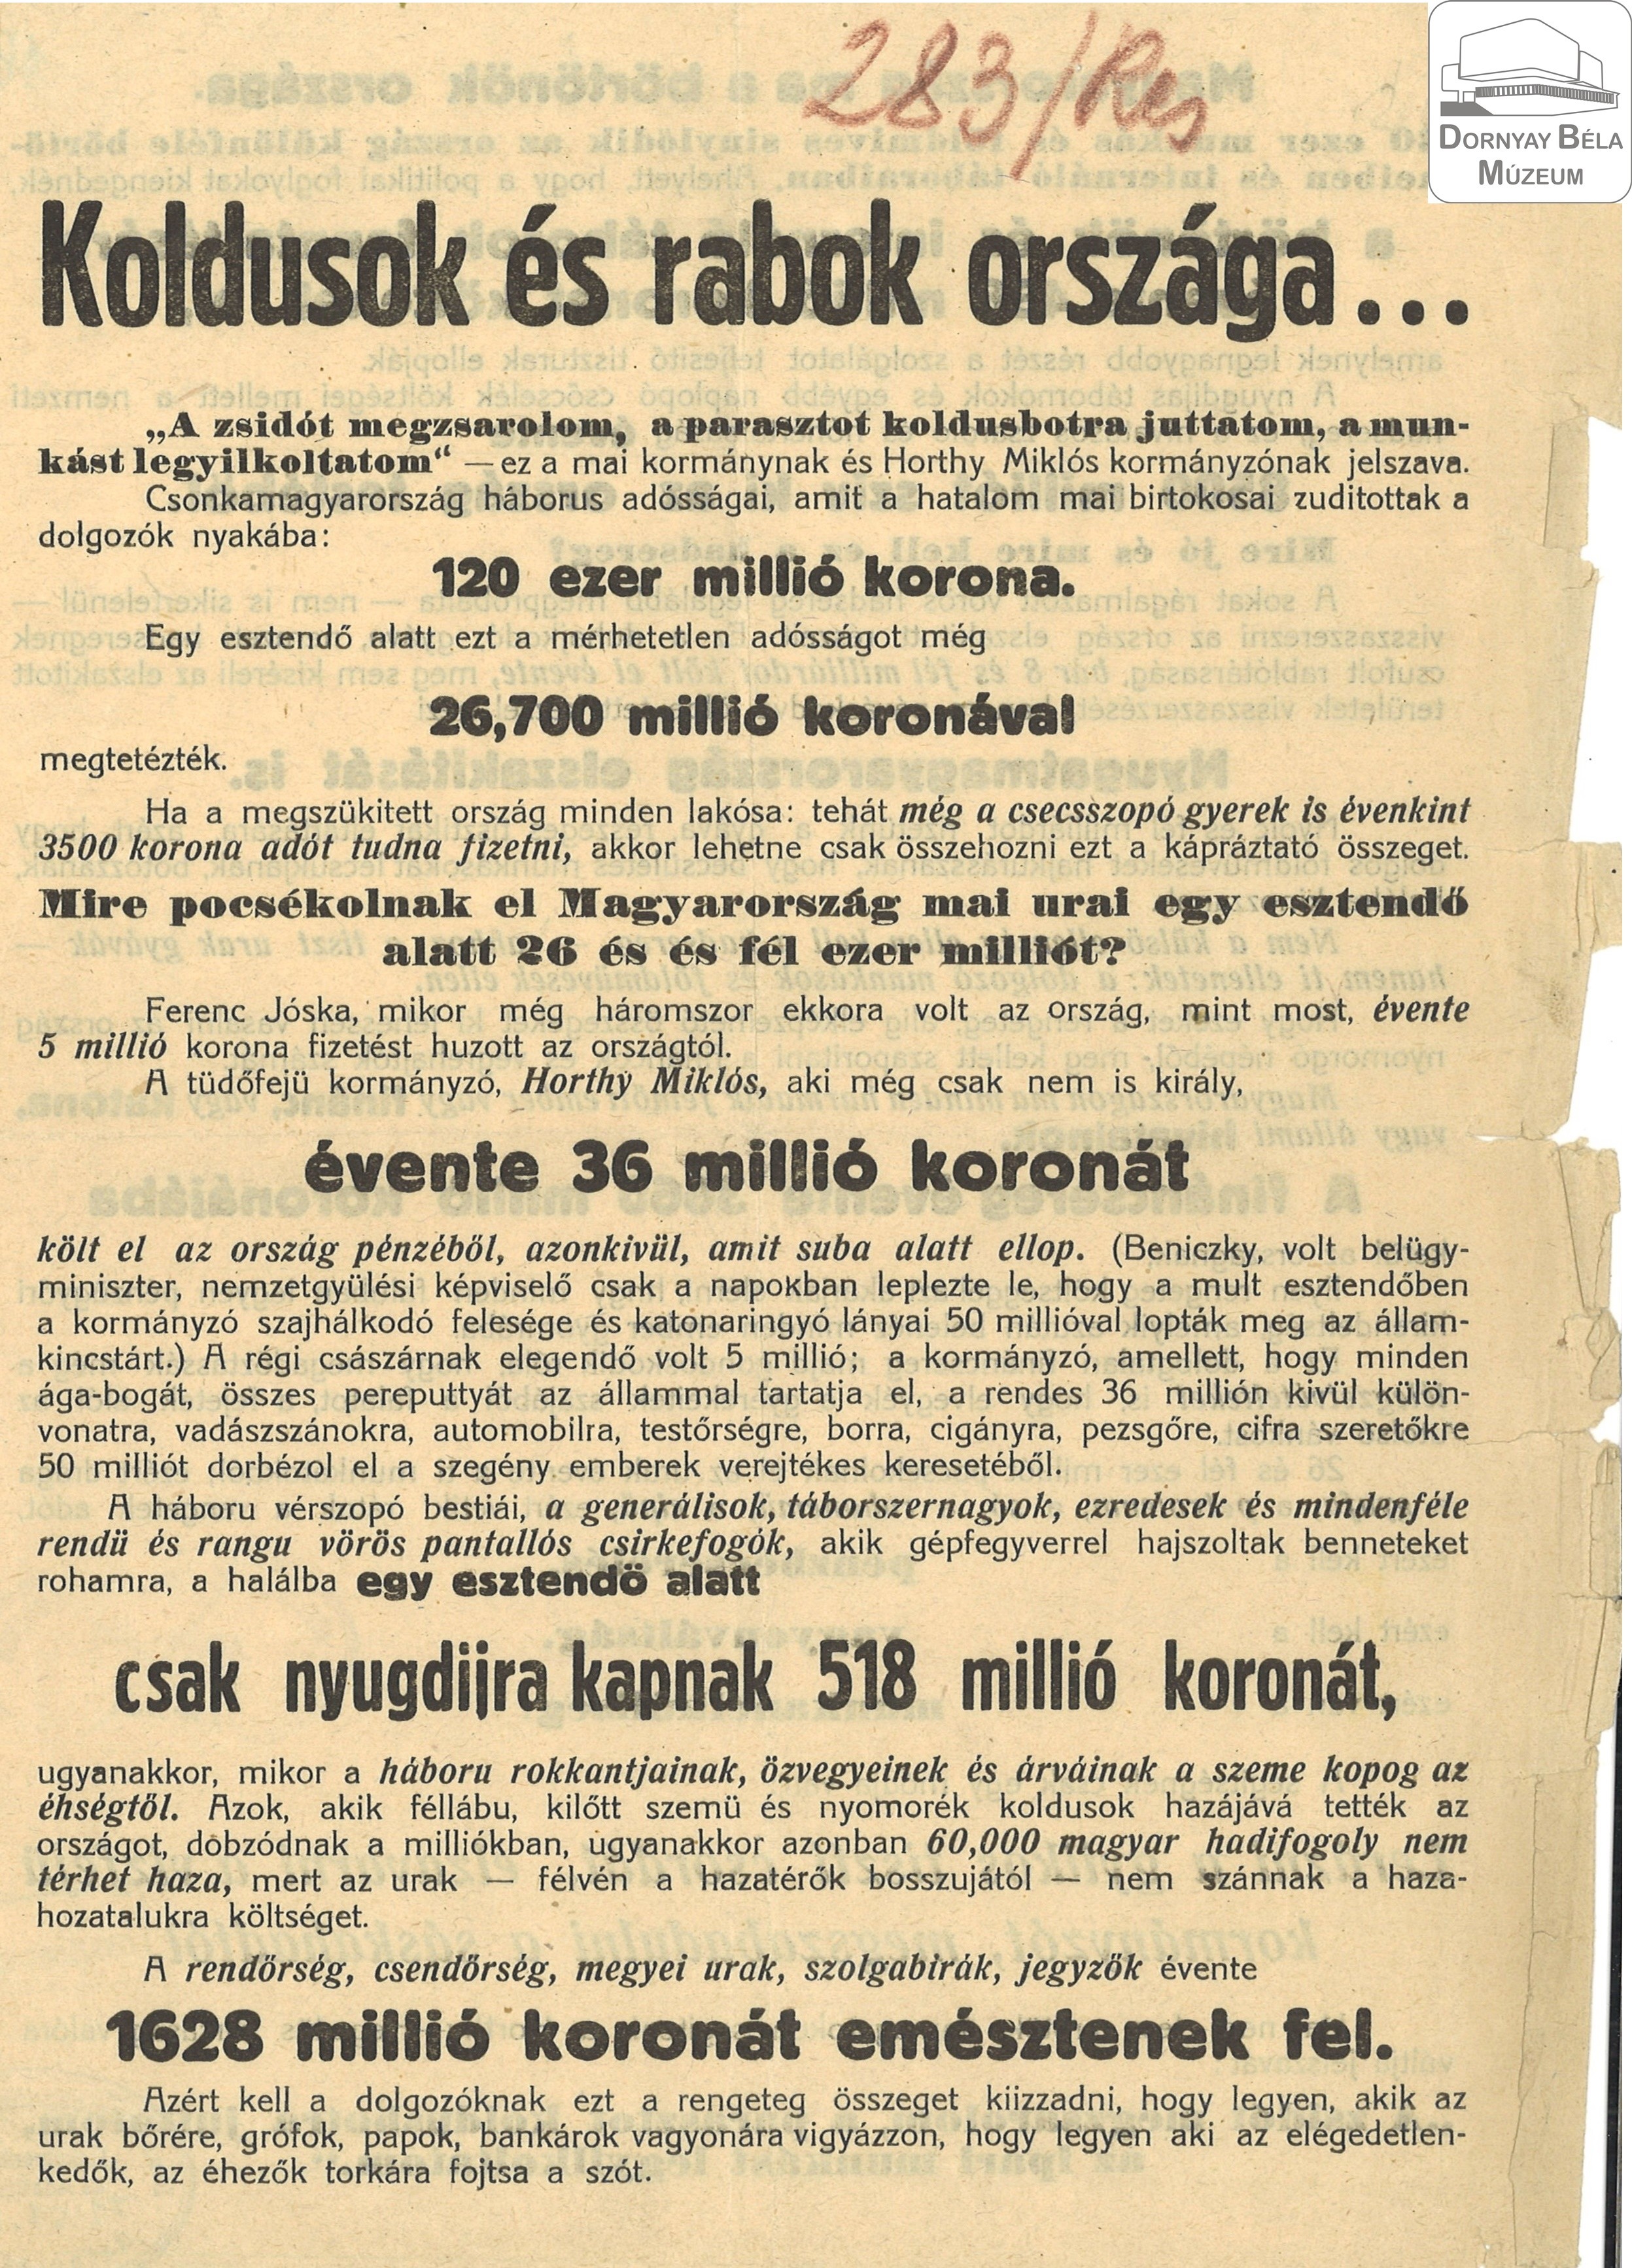 Forradalmi röpirat. Magyarország koldusok és rabok országa (Dornyay Béla Múzeum, Salgótarján CC BY-NC-SA)